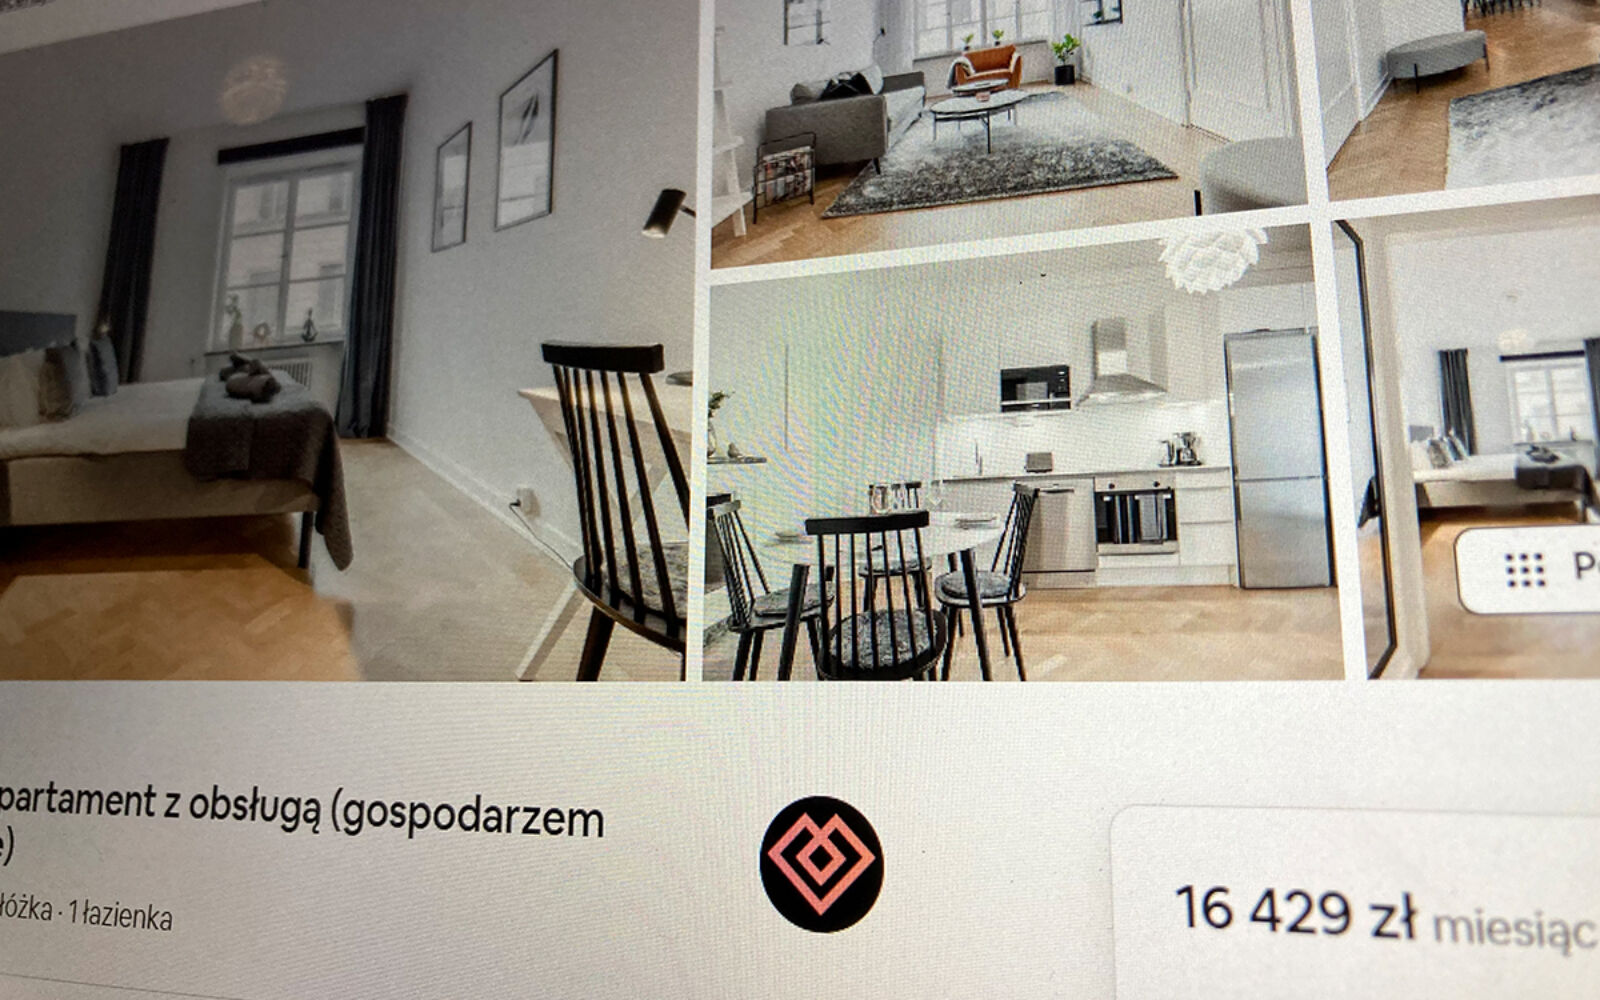 En trea på adressen hyrs ut för motsvarande 41 800 kronor i månaden på den polska Airbnb-sajten.